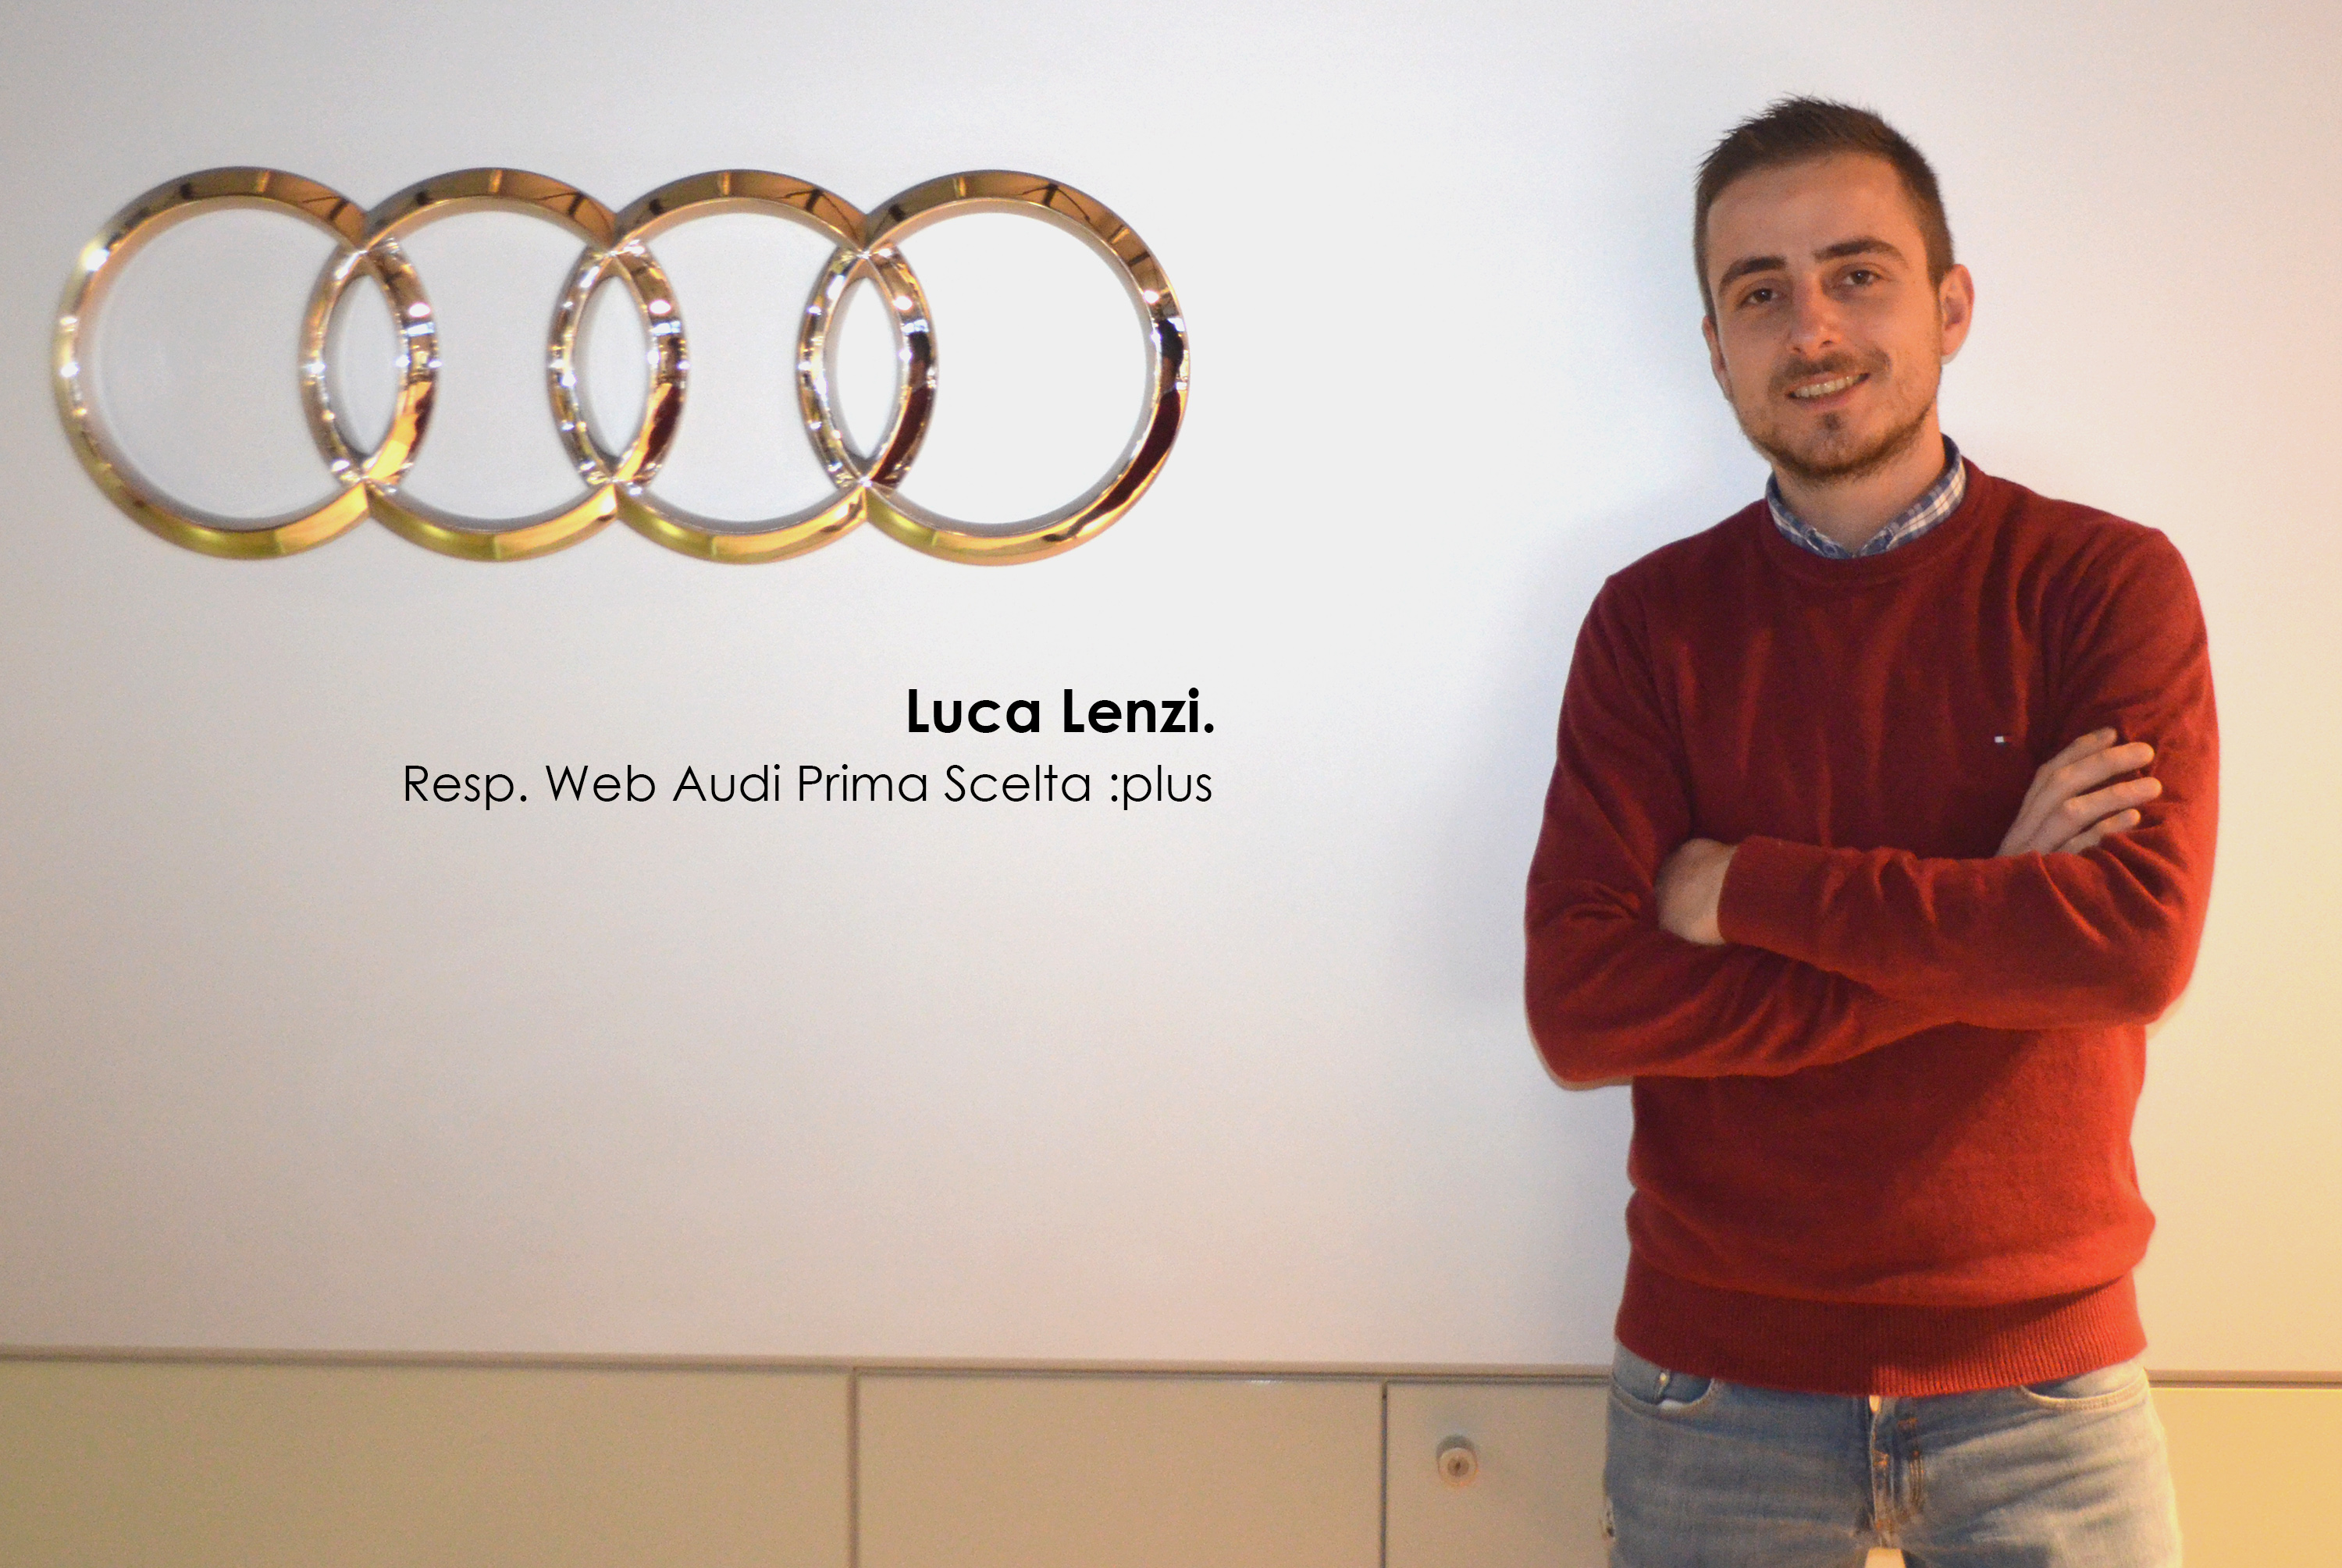 Luca Lenzi